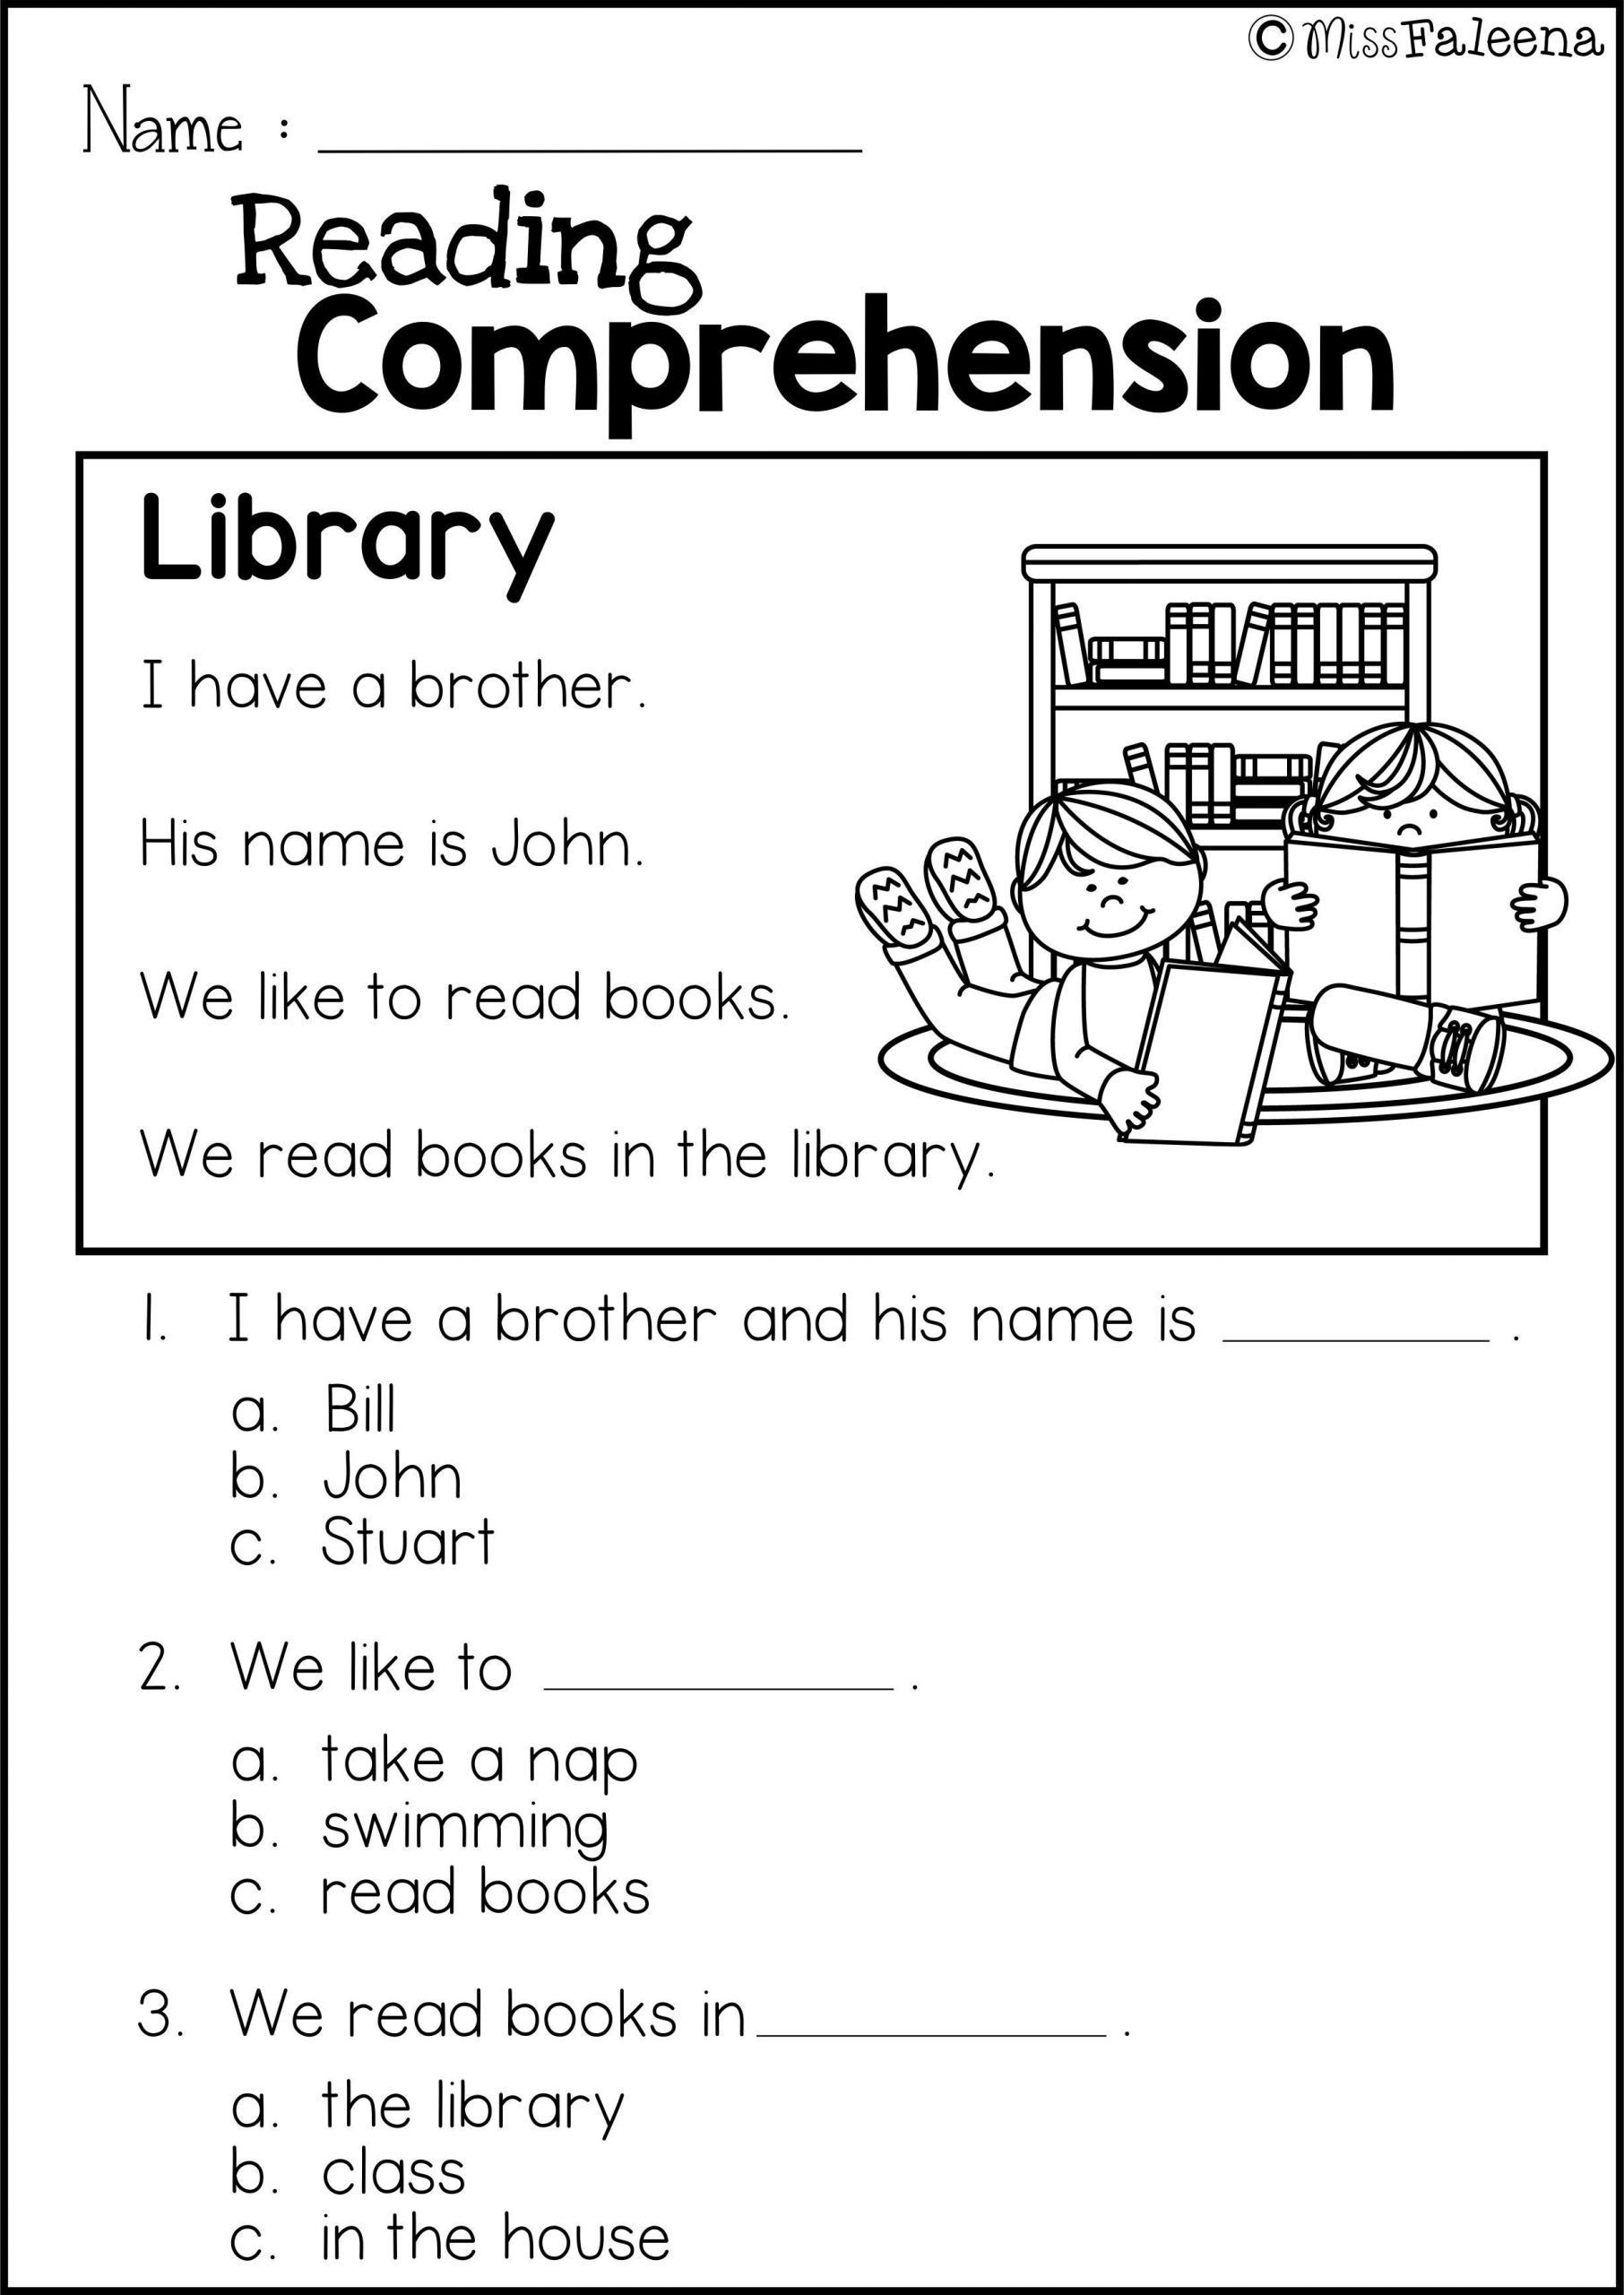 Comprehension Worksheet First Grade 4 Worksheet Reading Prehension Worksheets First Grade 1